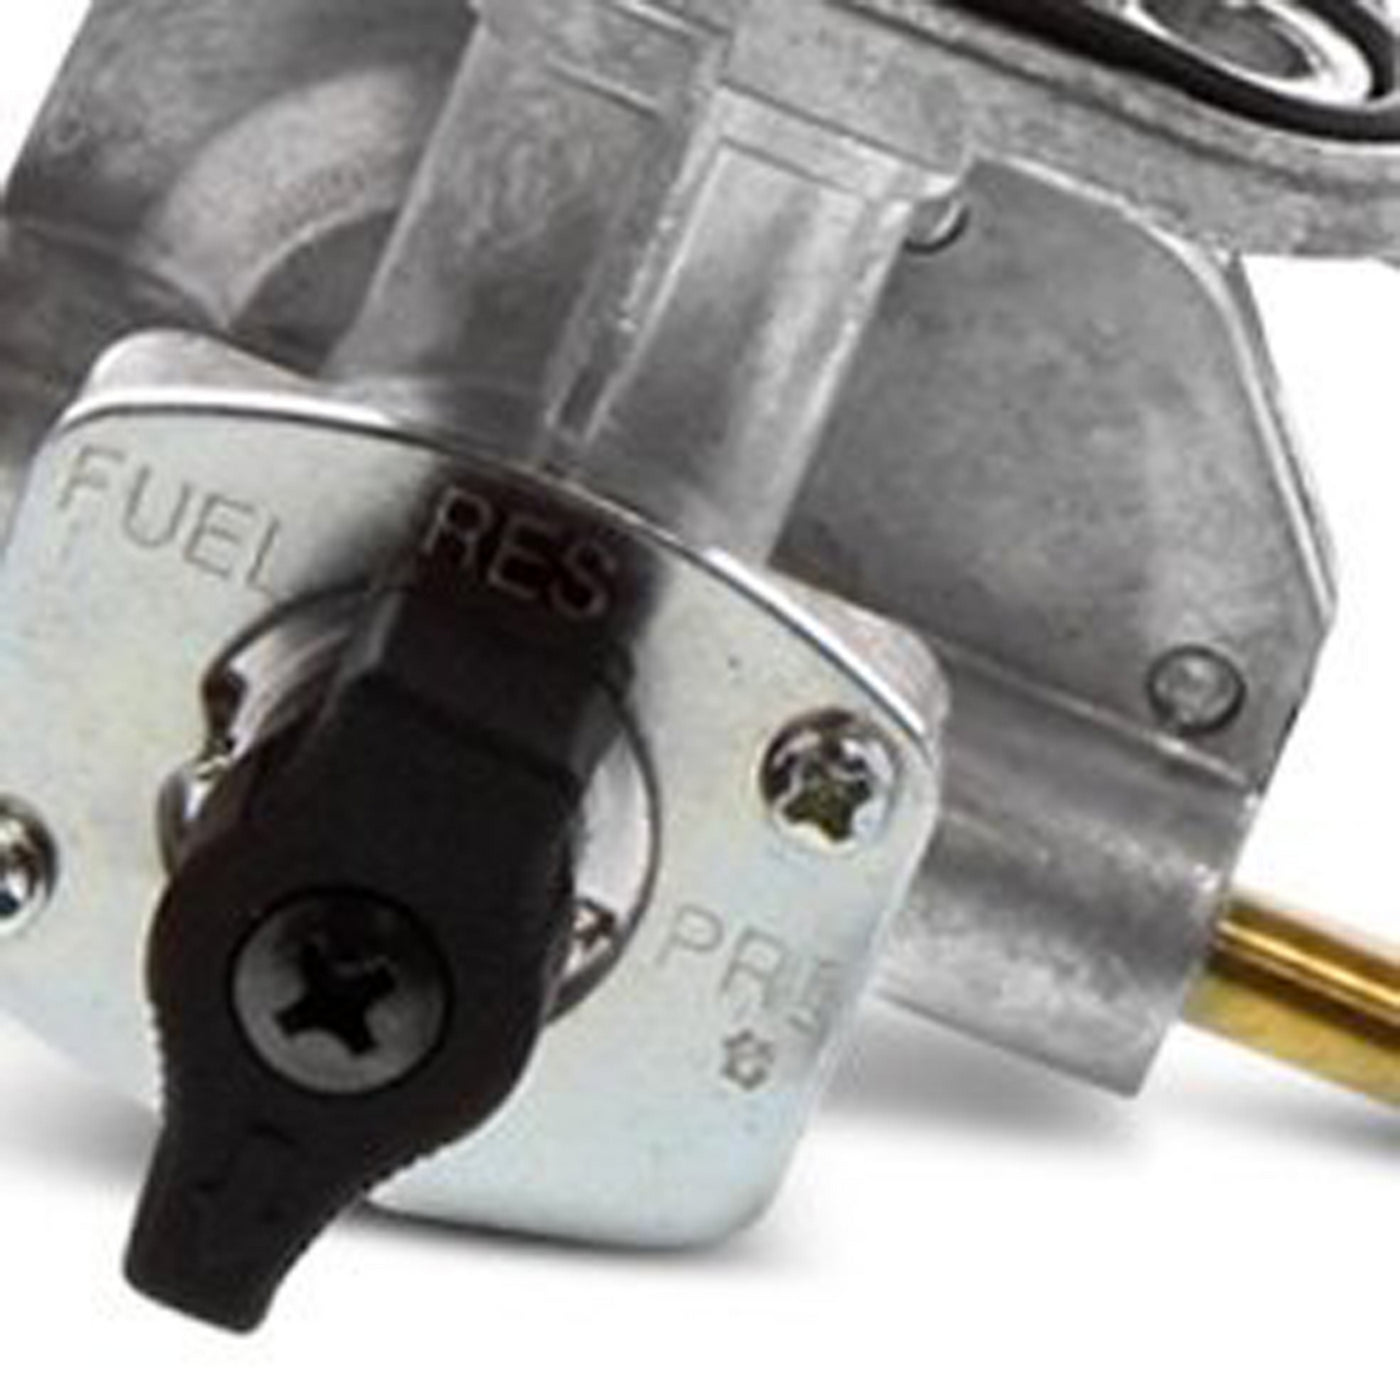 Fuel Star FS101-0133 Fuel Valve Kit #FS101-0133